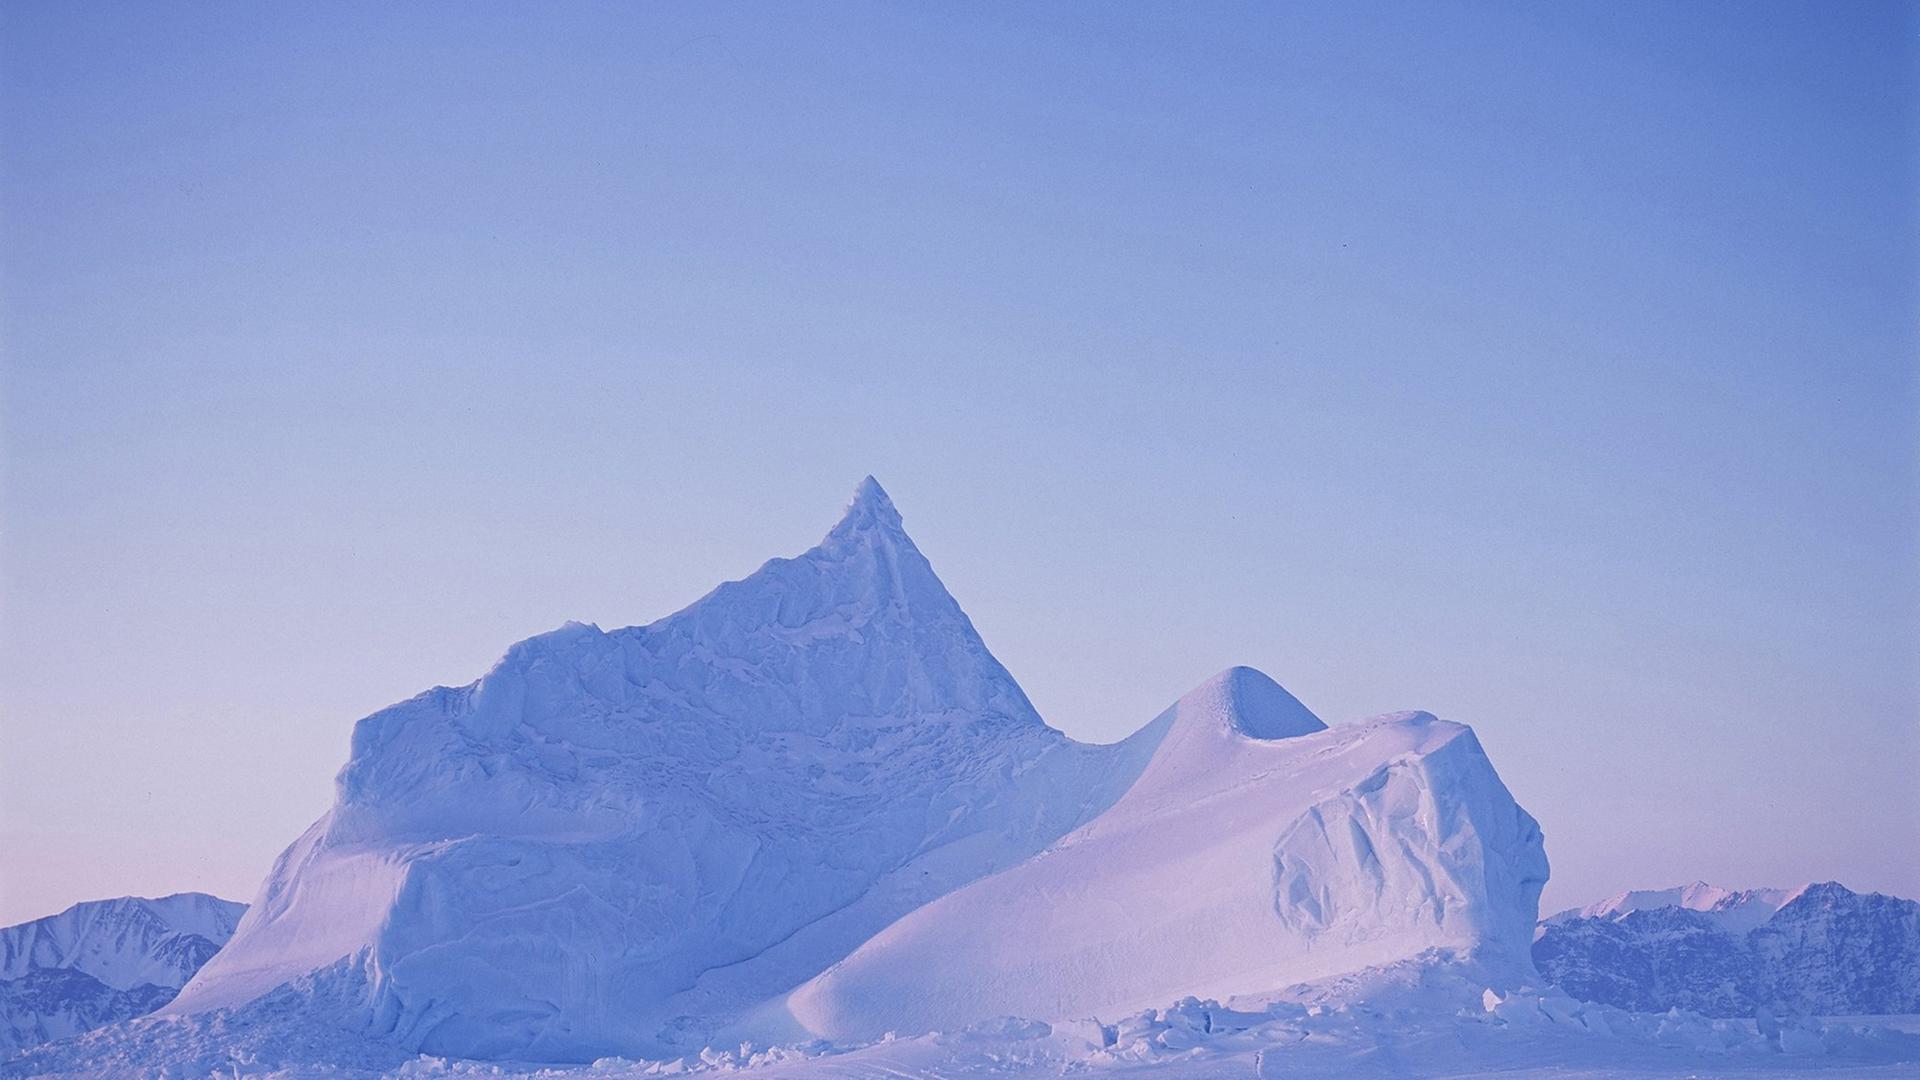 Die Aufnahme zeigt einen Eisberg vor der Nordküste von Baffin Island im kanadischen Territorium Nunavut.